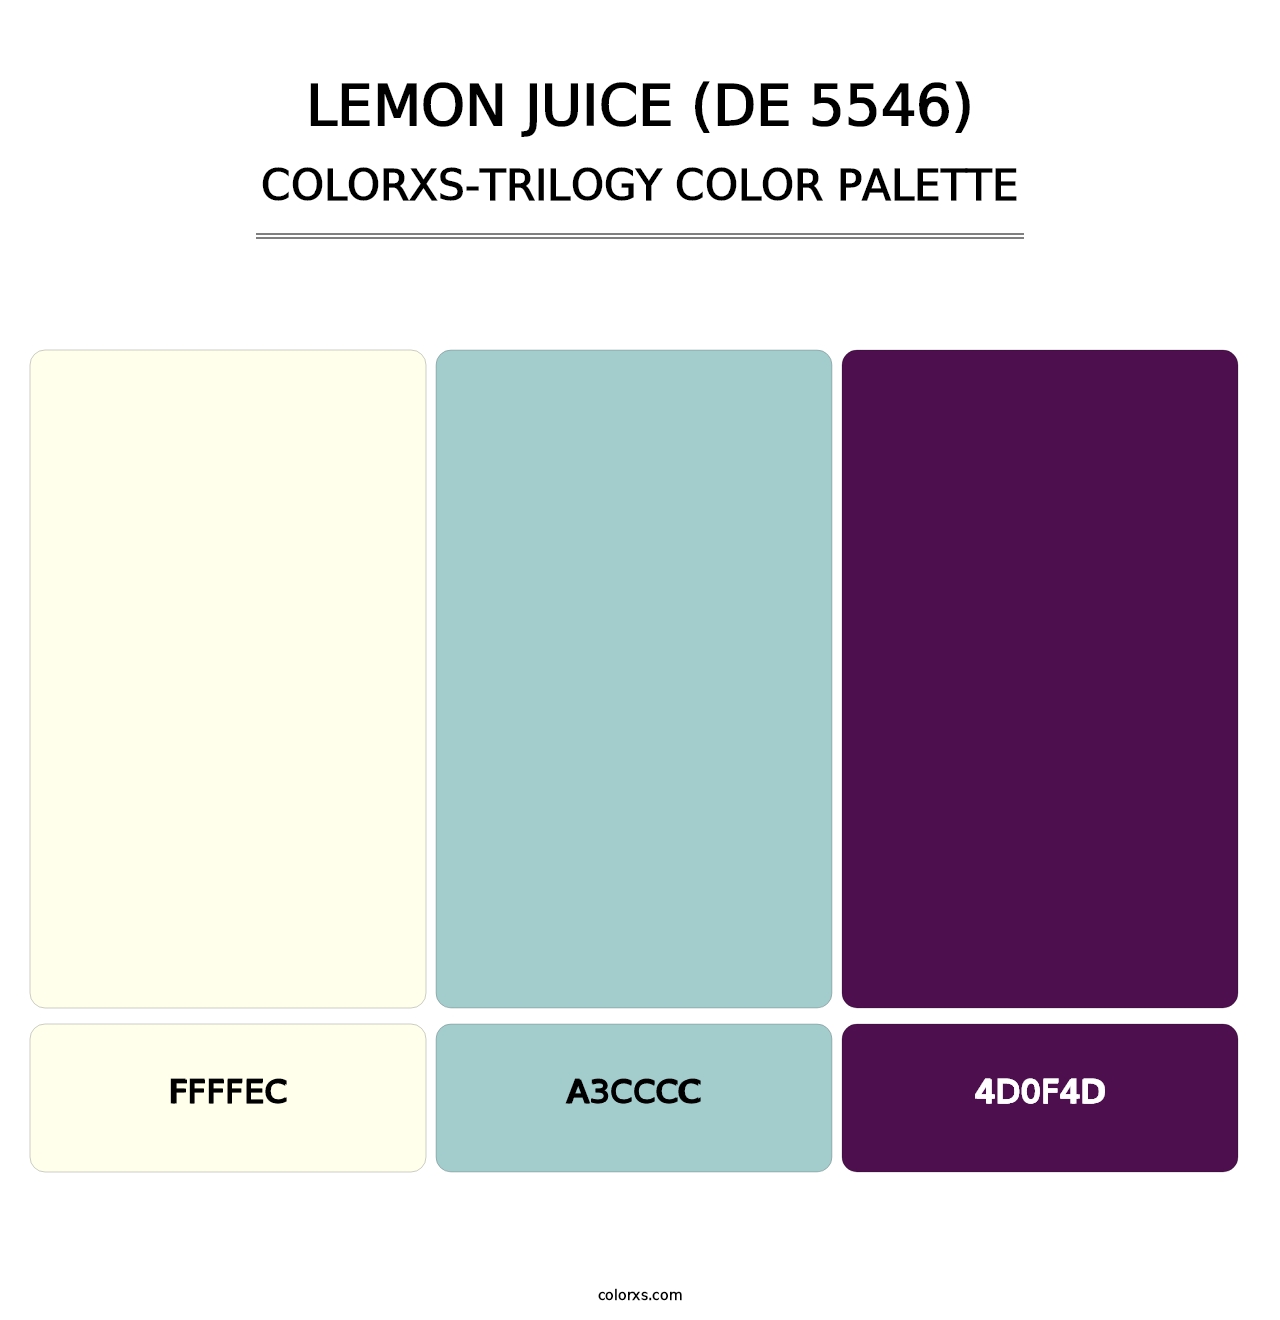 Lemon Juice (DE 5546) - Colorxs Trilogy Palette